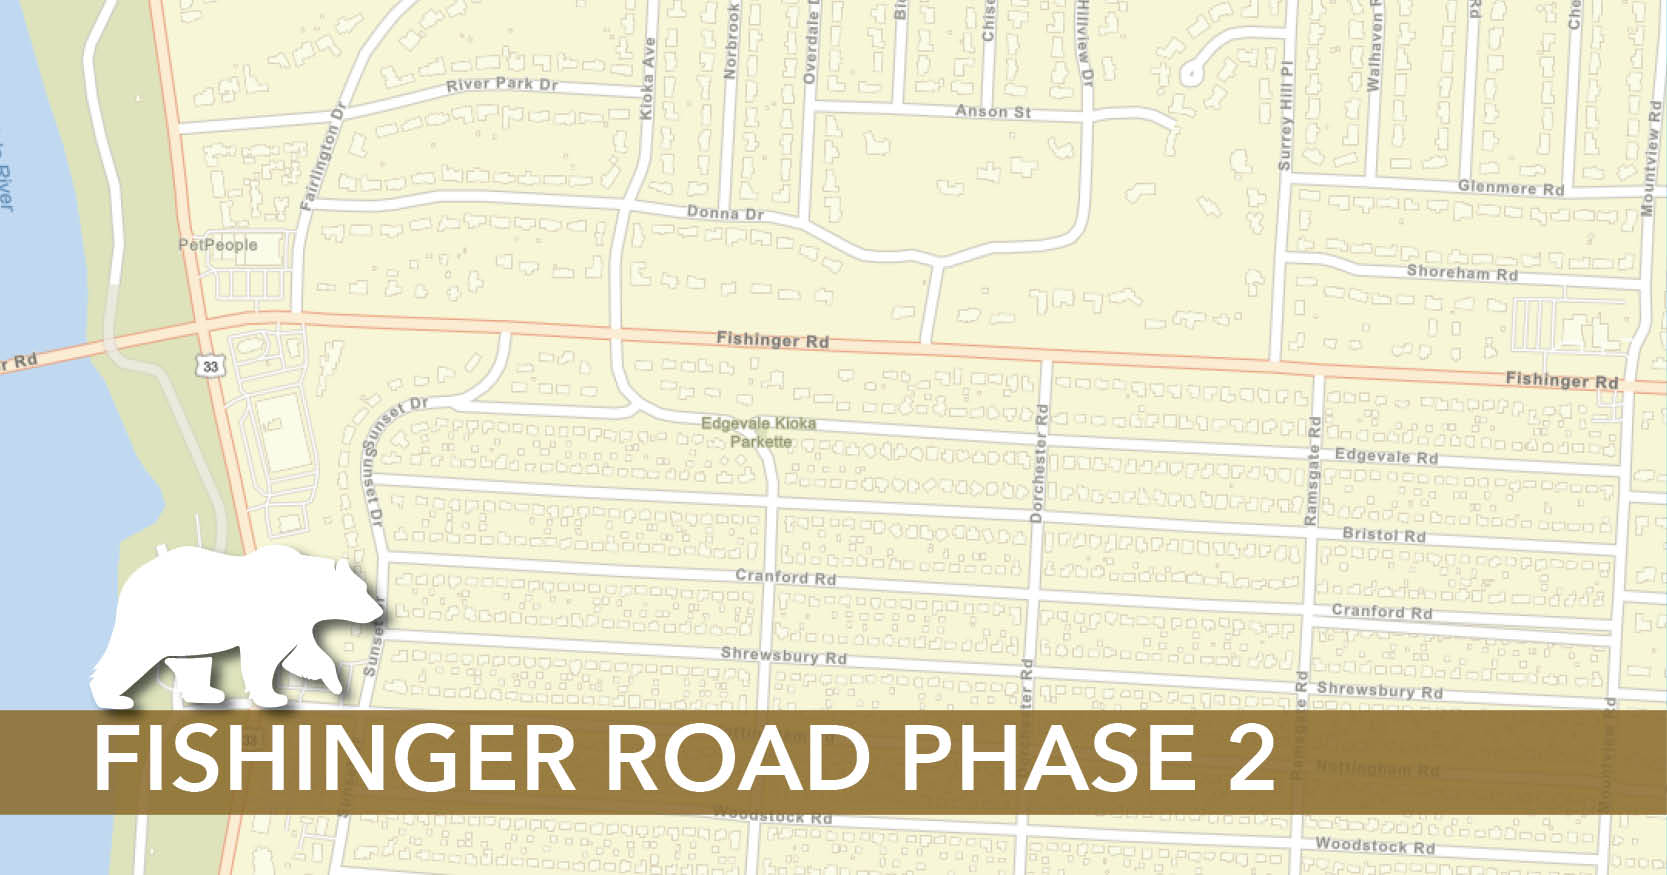 Fishinger Road Phase 2